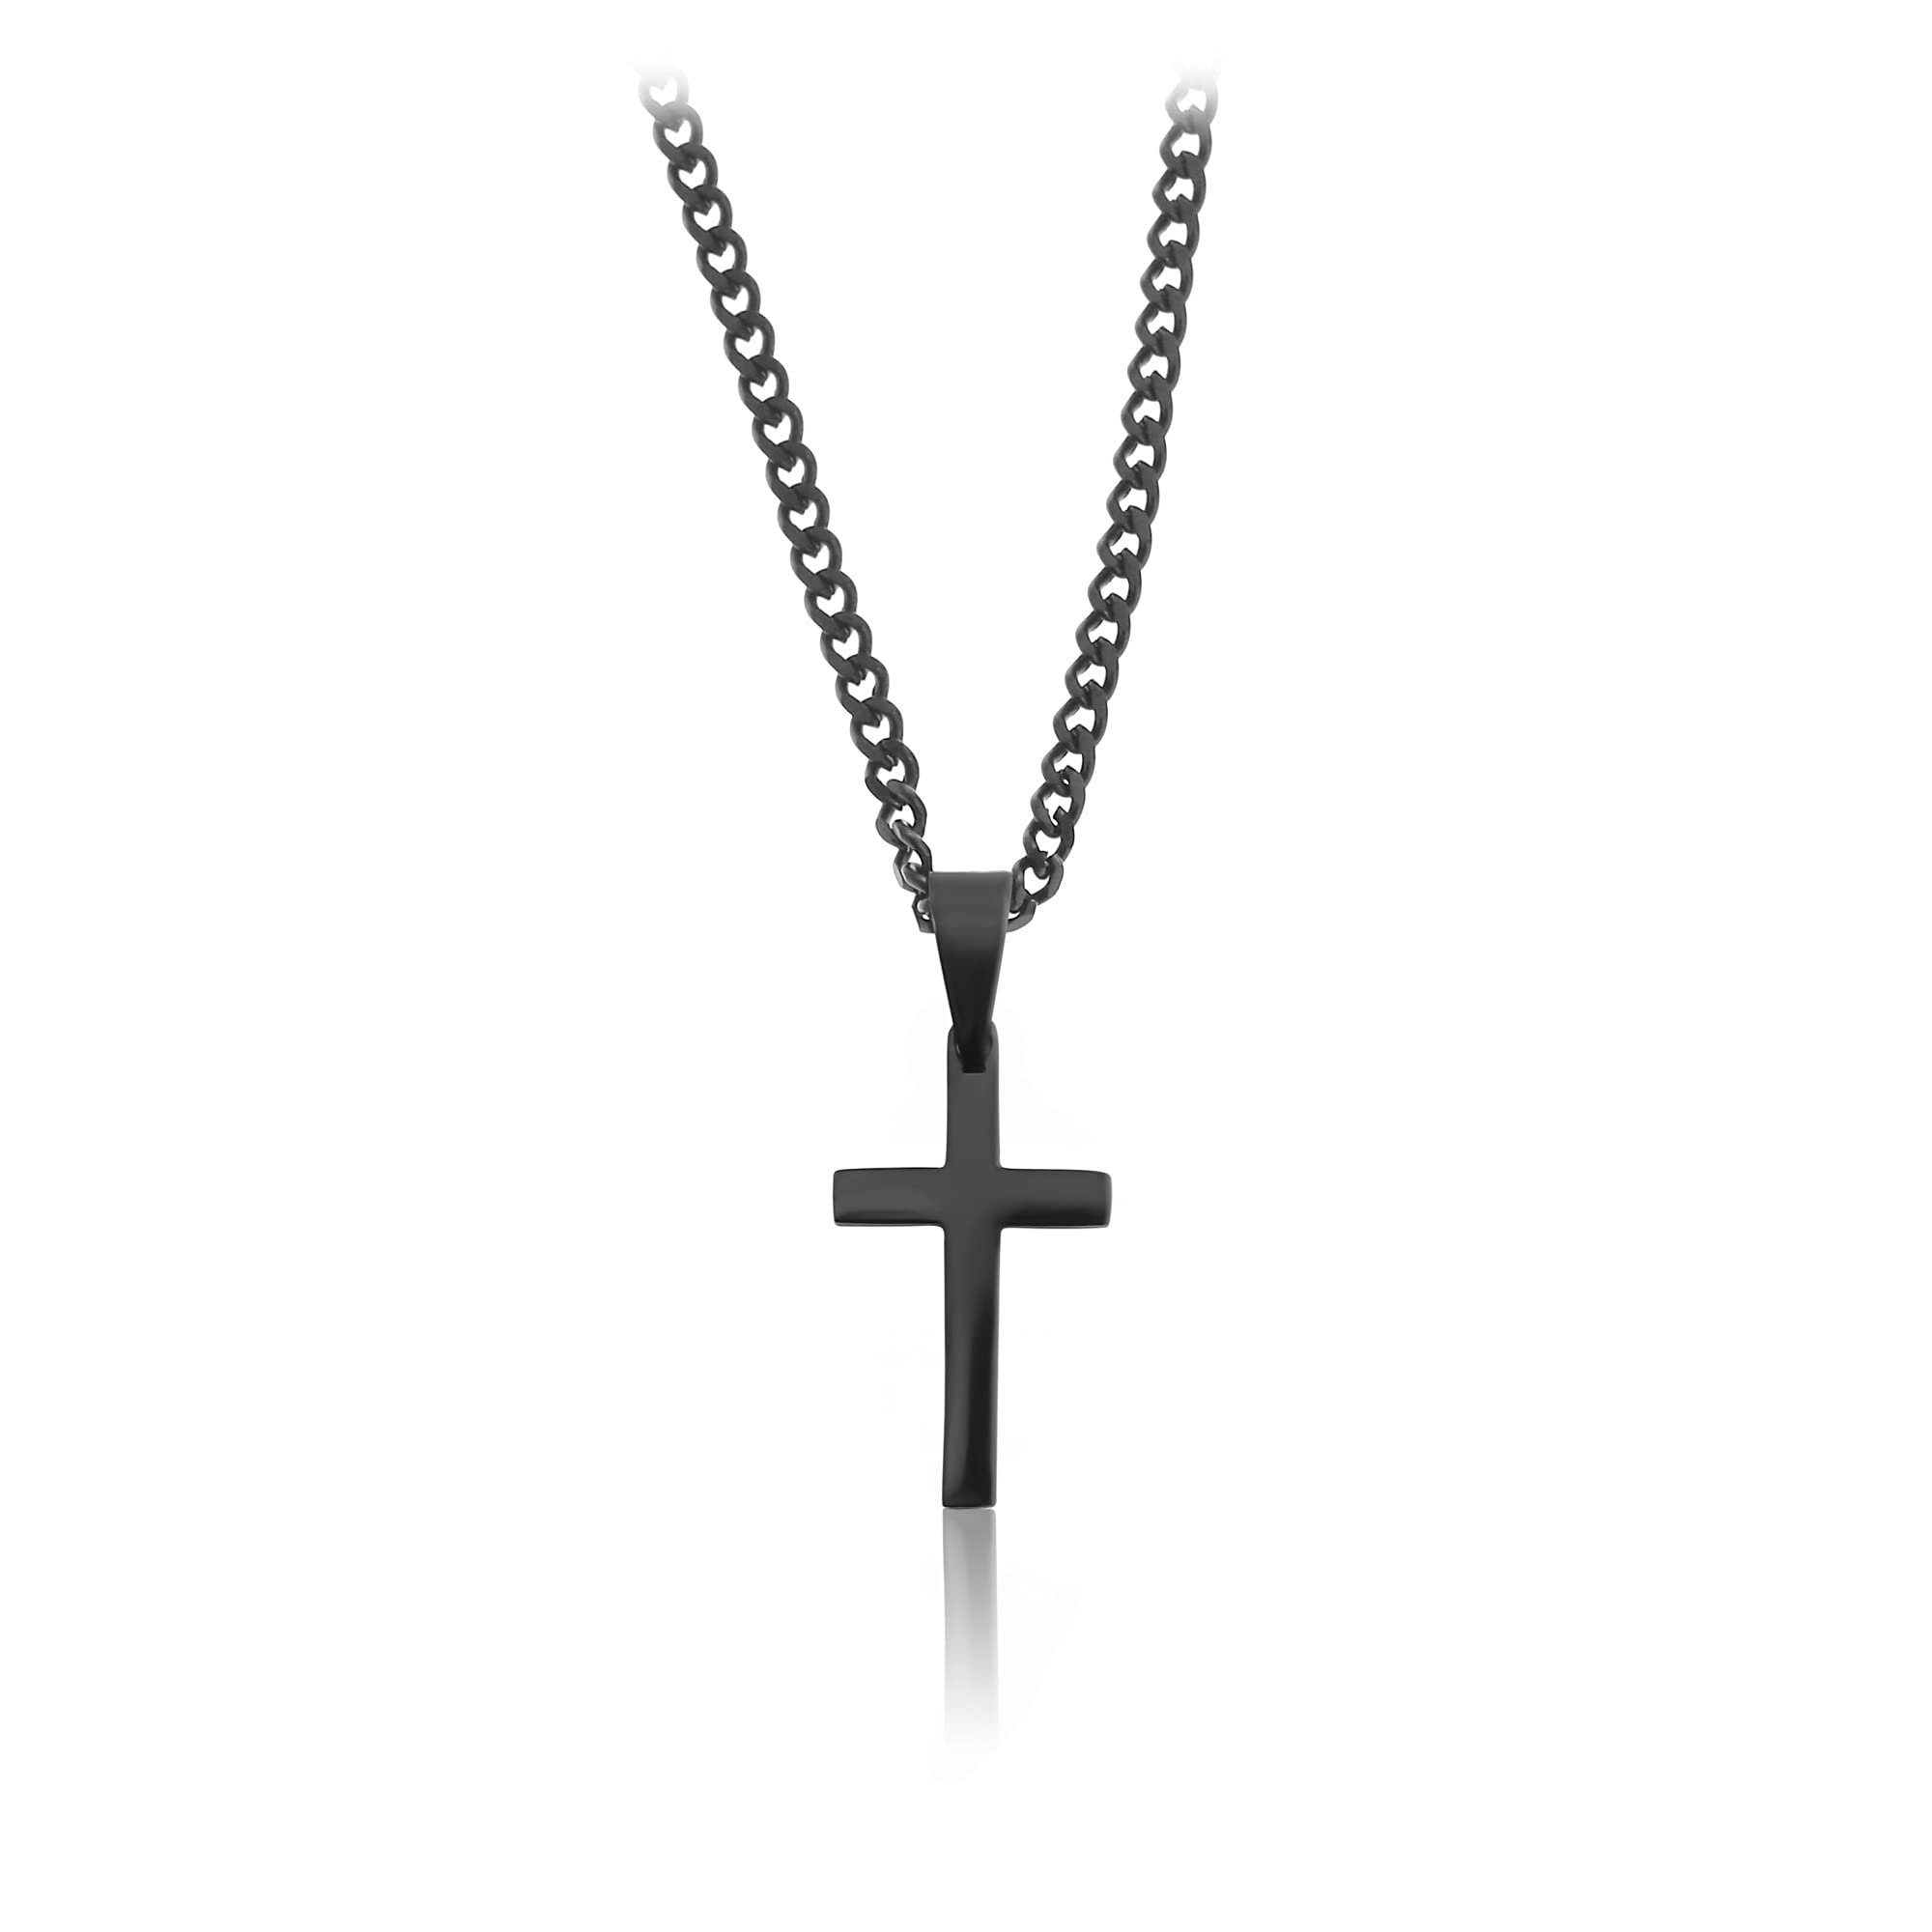 Made by Nami Anhänger Edelstahl Kreuzkette Herren, mit Schwarz Gliederkette Halskette Anhänger Kreuz Kette